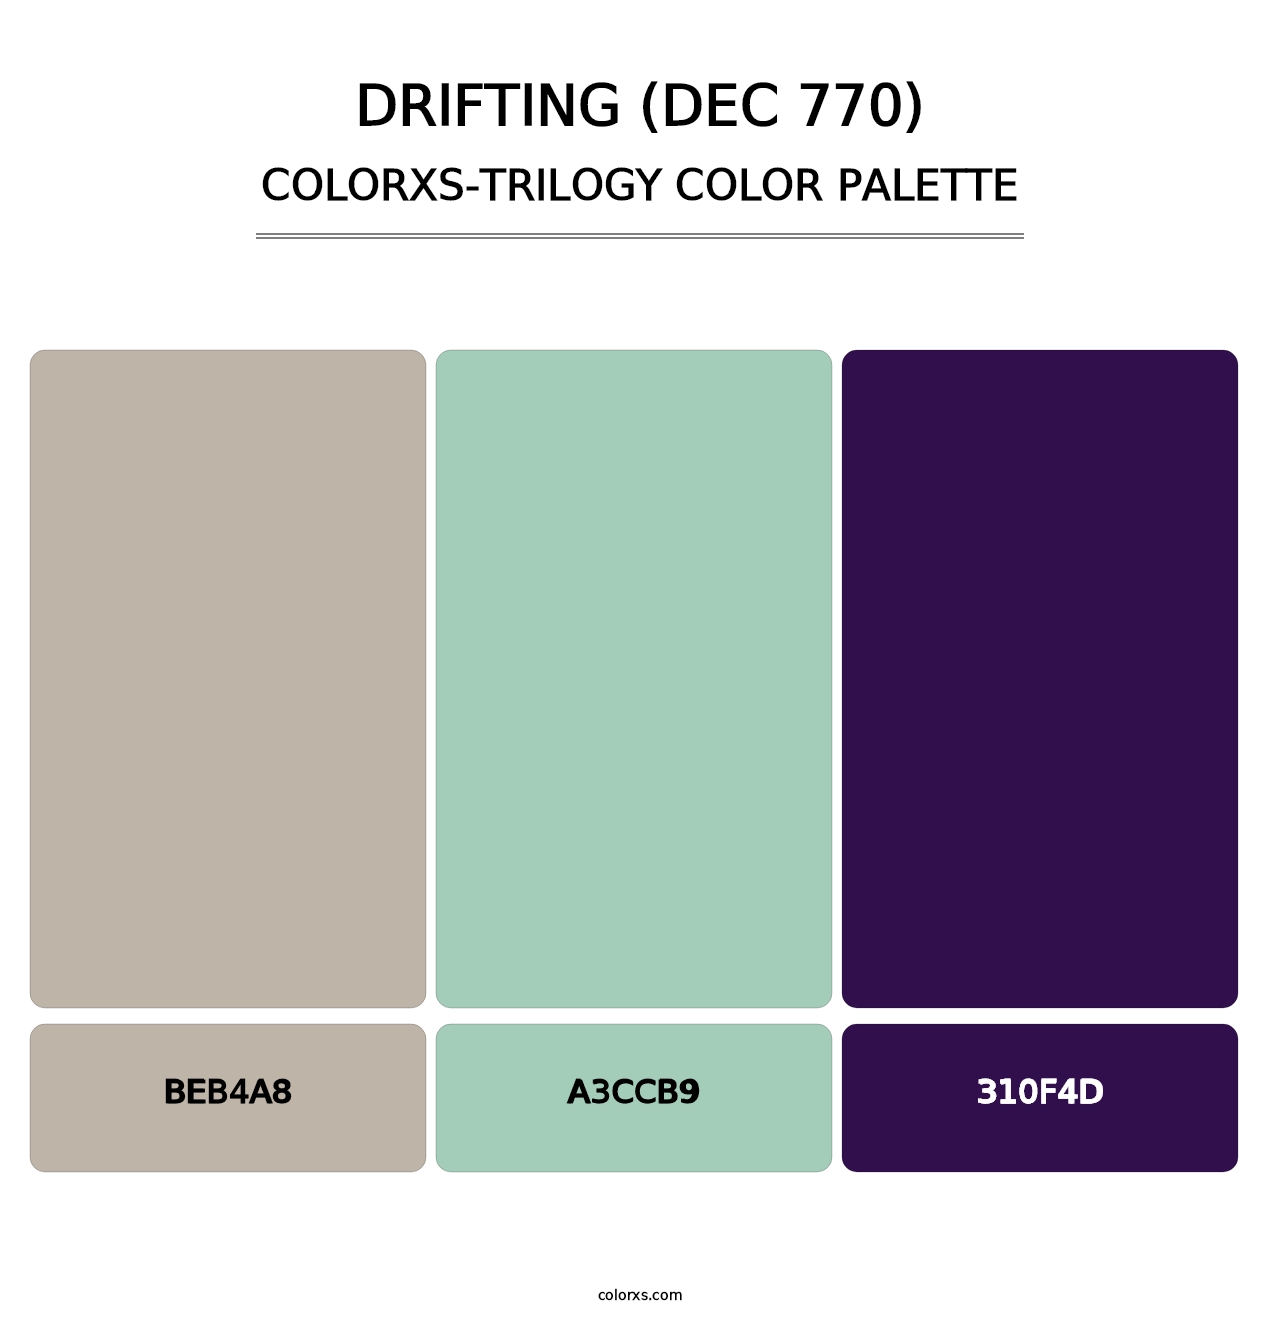 Drifting (DEC 770) - Colorxs Trilogy Palette